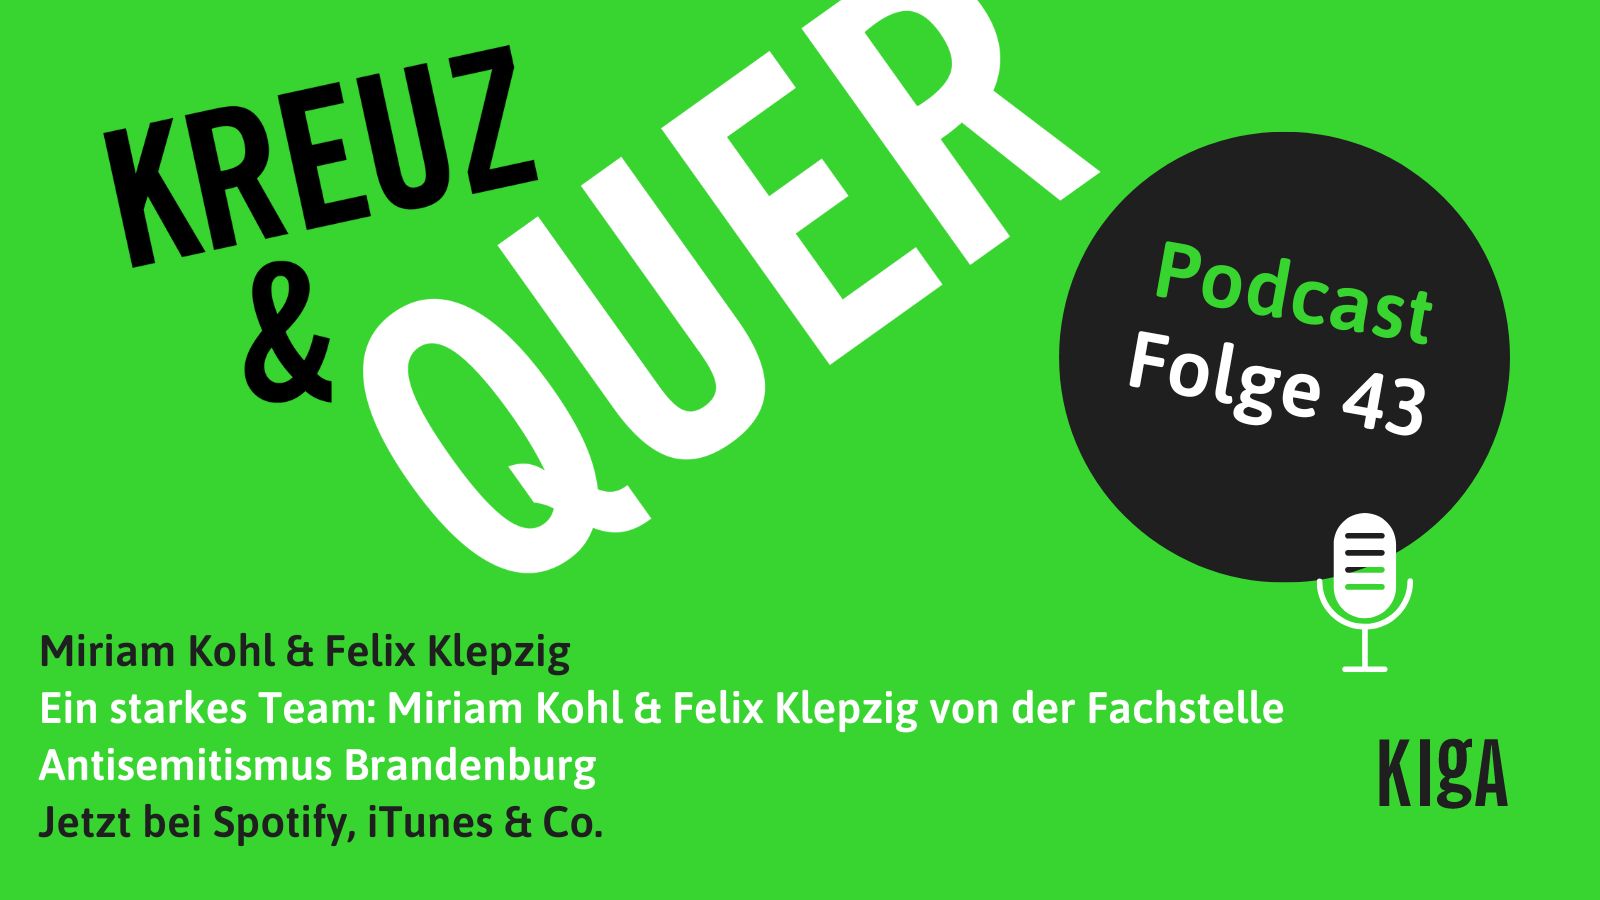 Miriam Kohl & Felix Klepzig beim Podcast von “KREUZ&QUER”